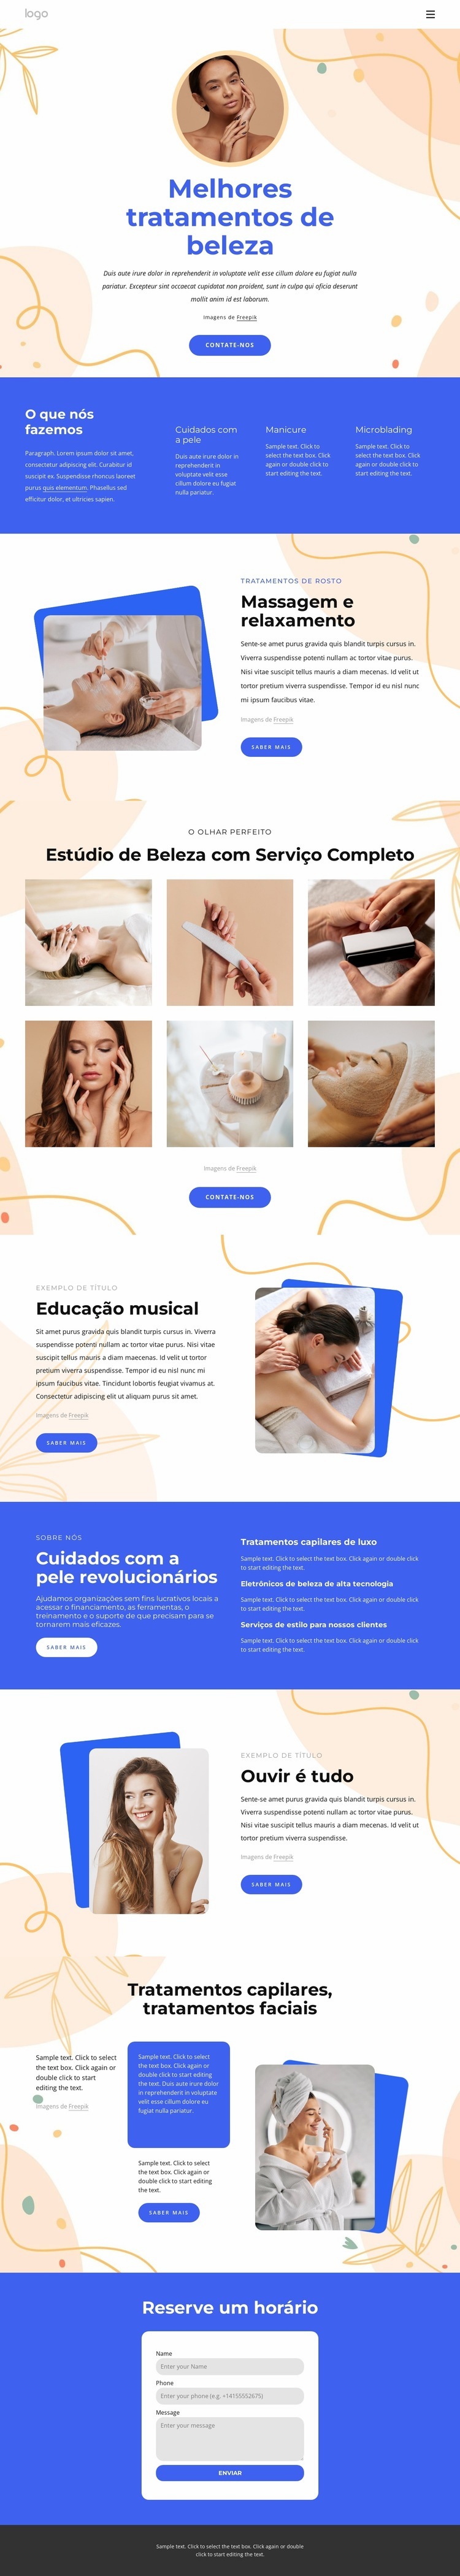 Nossos tratamentos de beleza Design do site